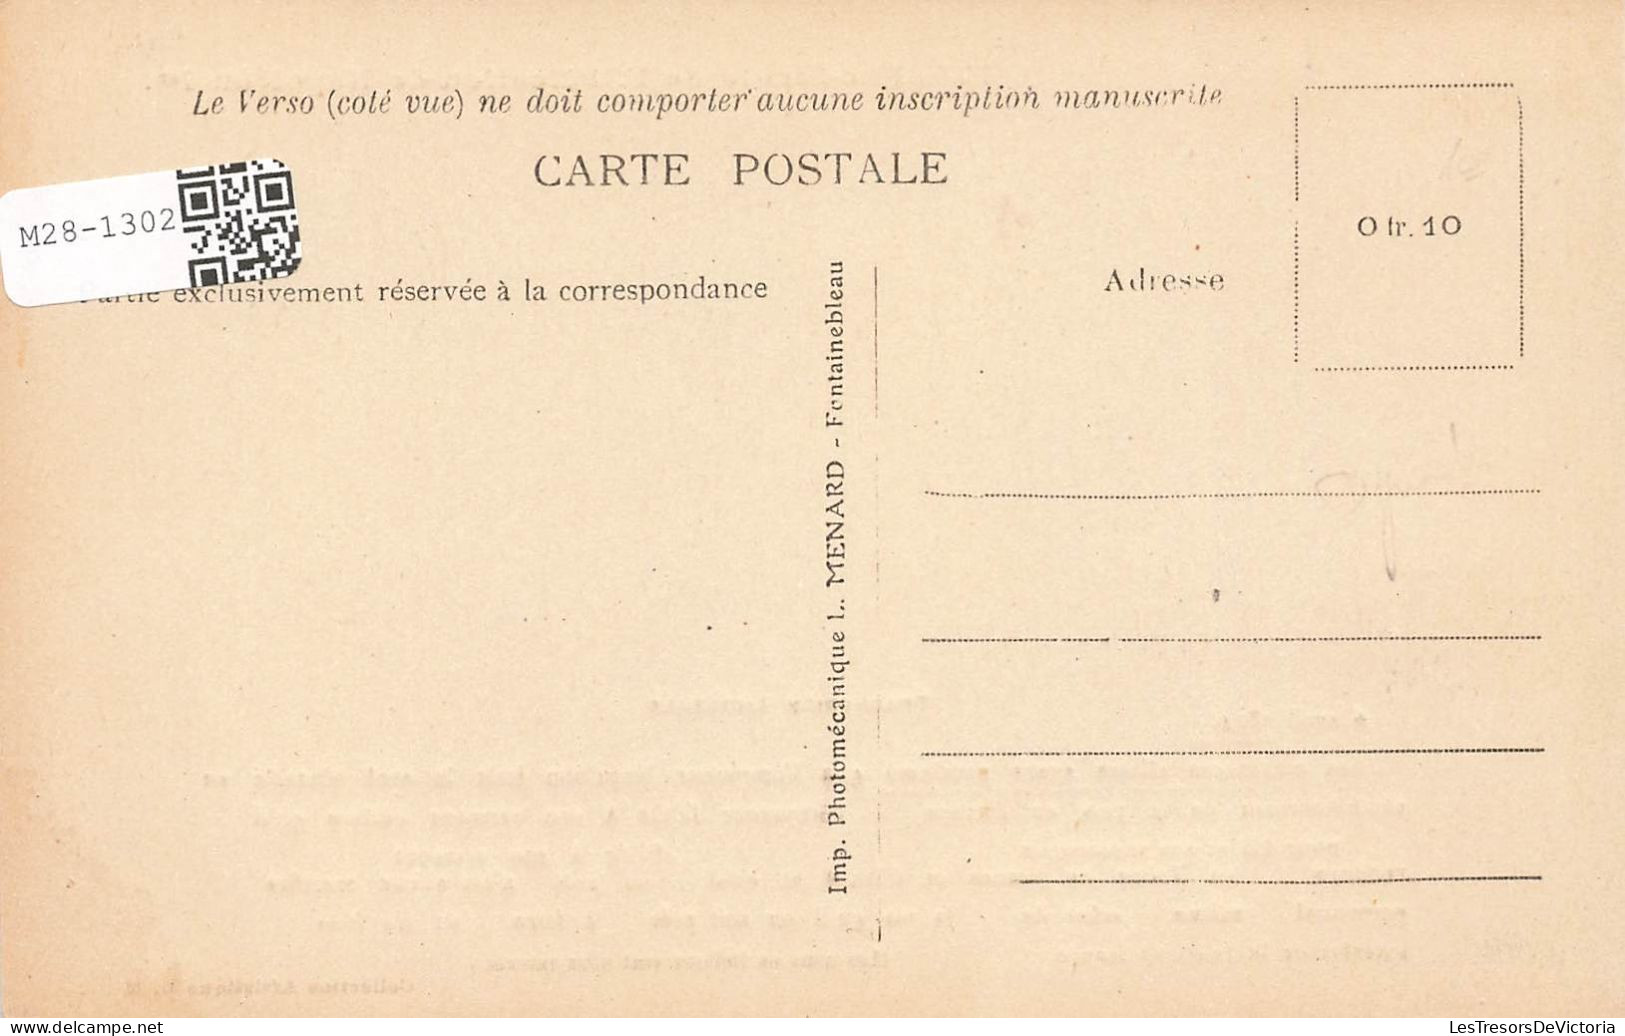 HISTOIRE - Fac-Simile De L'Abdication De Napoléon Ler - Carte Postale Ancienne - Histoire